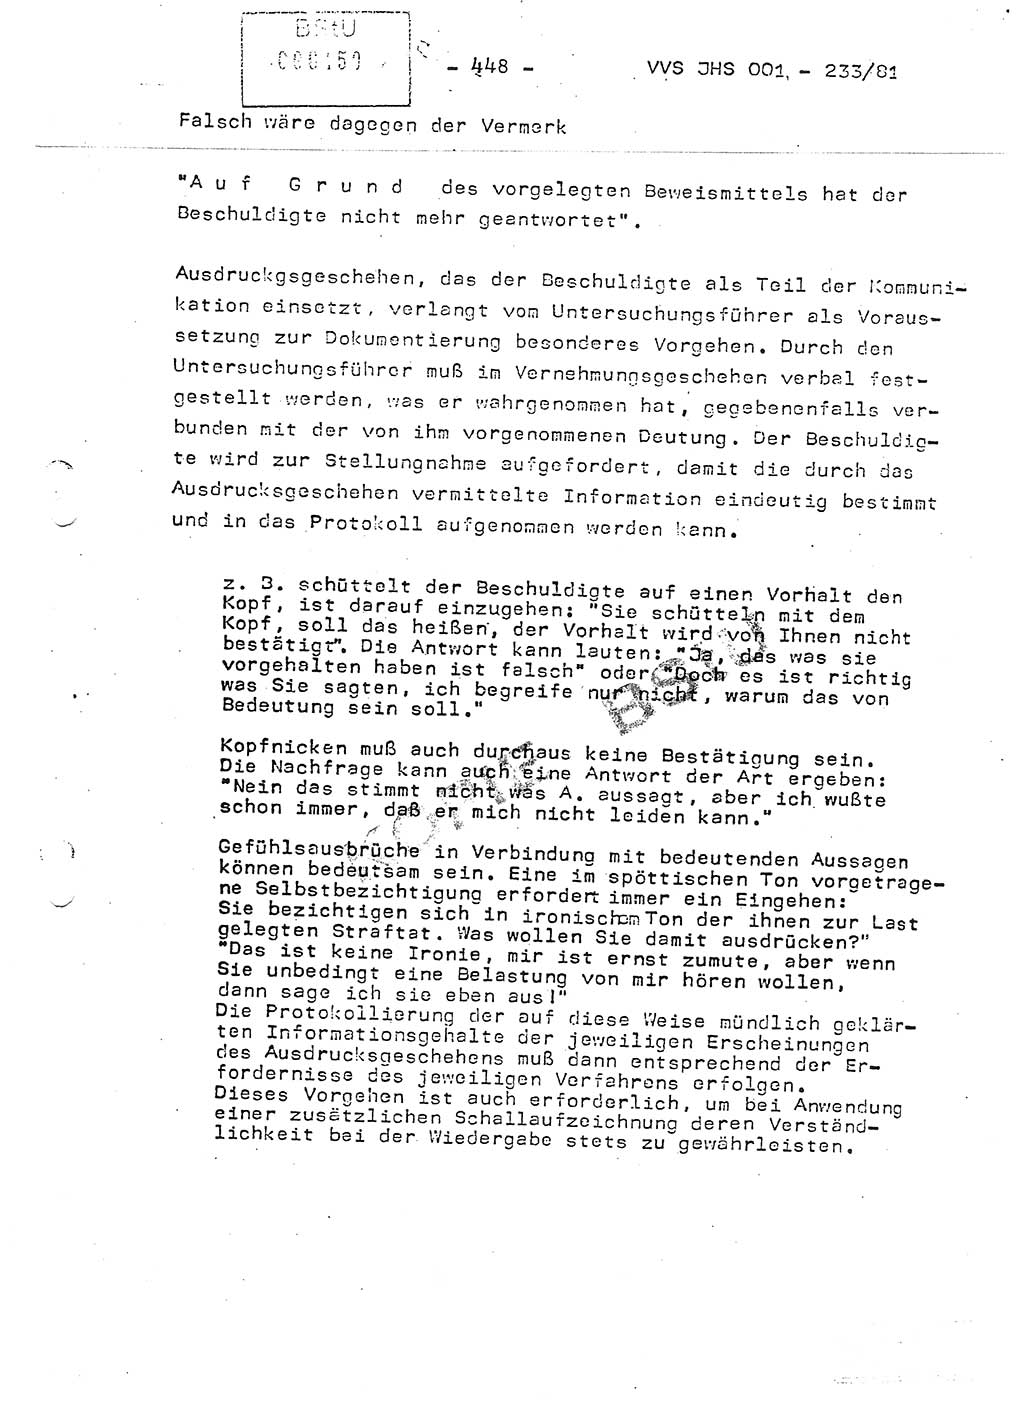 Dissertation Oberstleutnant Horst Zank (JHS), Oberstleutnant Dr. Karl-Heinz Knoblauch (JHS), Oberstleutnant Gustav-Adolf Kowalewski (HA Ⅸ), Oberstleutnant Wolfgang Plötner (HA Ⅸ), Ministerium für Staatssicherheit (MfS) [Deutsche Demokratische Republik (DDR)], Juristische Hochschule (JHS), Vertrauliche Verschlußsache (VVS) o001-233/81, Potsdam 1981, Blatt 448 (Diss. MfS DDR JHS VVS o001-233/81 1981, Bl. 448)